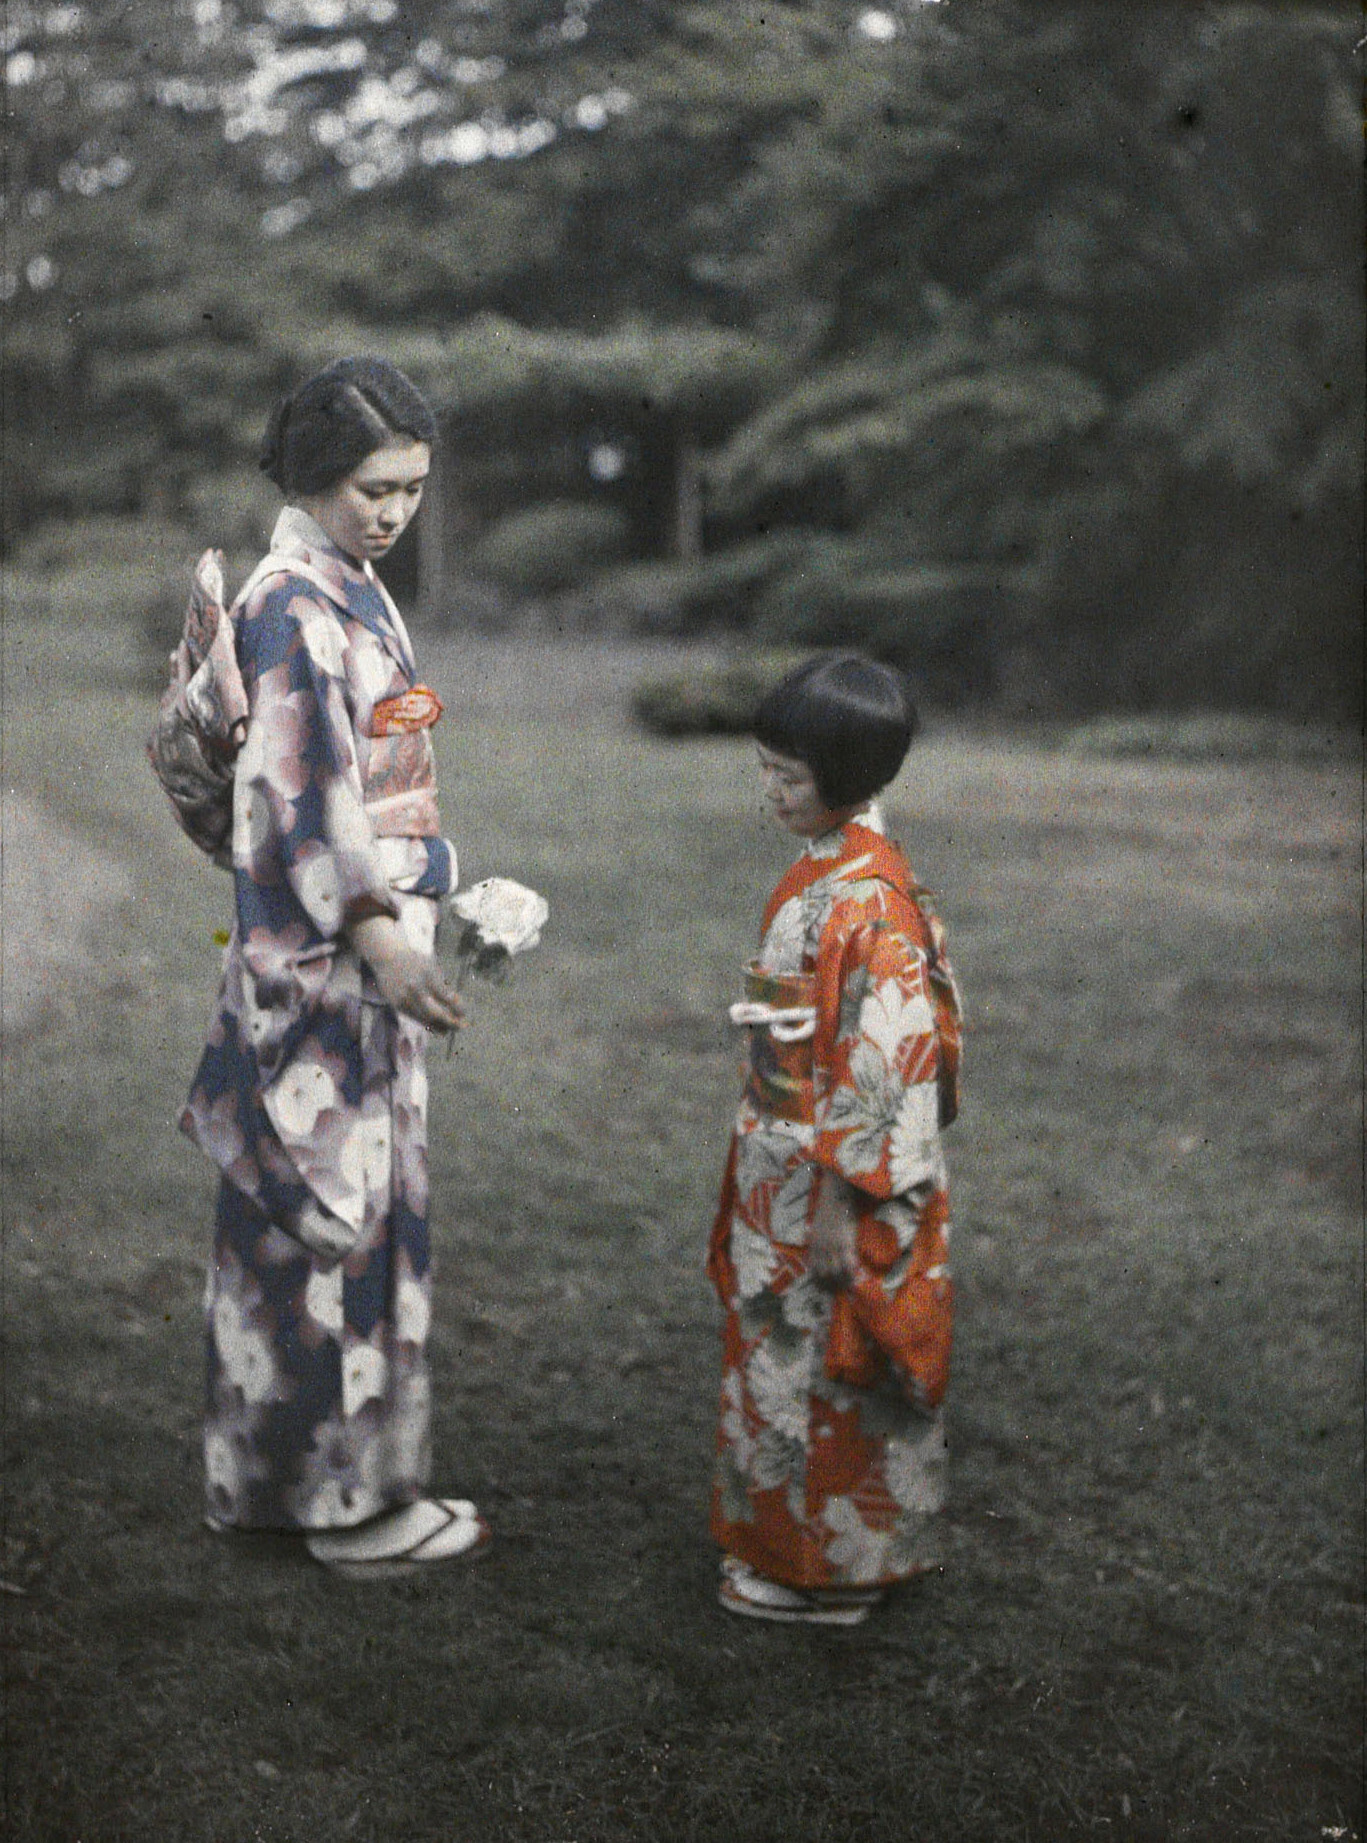 Токио, Япония. Резиденция семьи Китасиракава, юная принцесса Кикуко, 1926 год, автор Роджер Дюма (автохром)